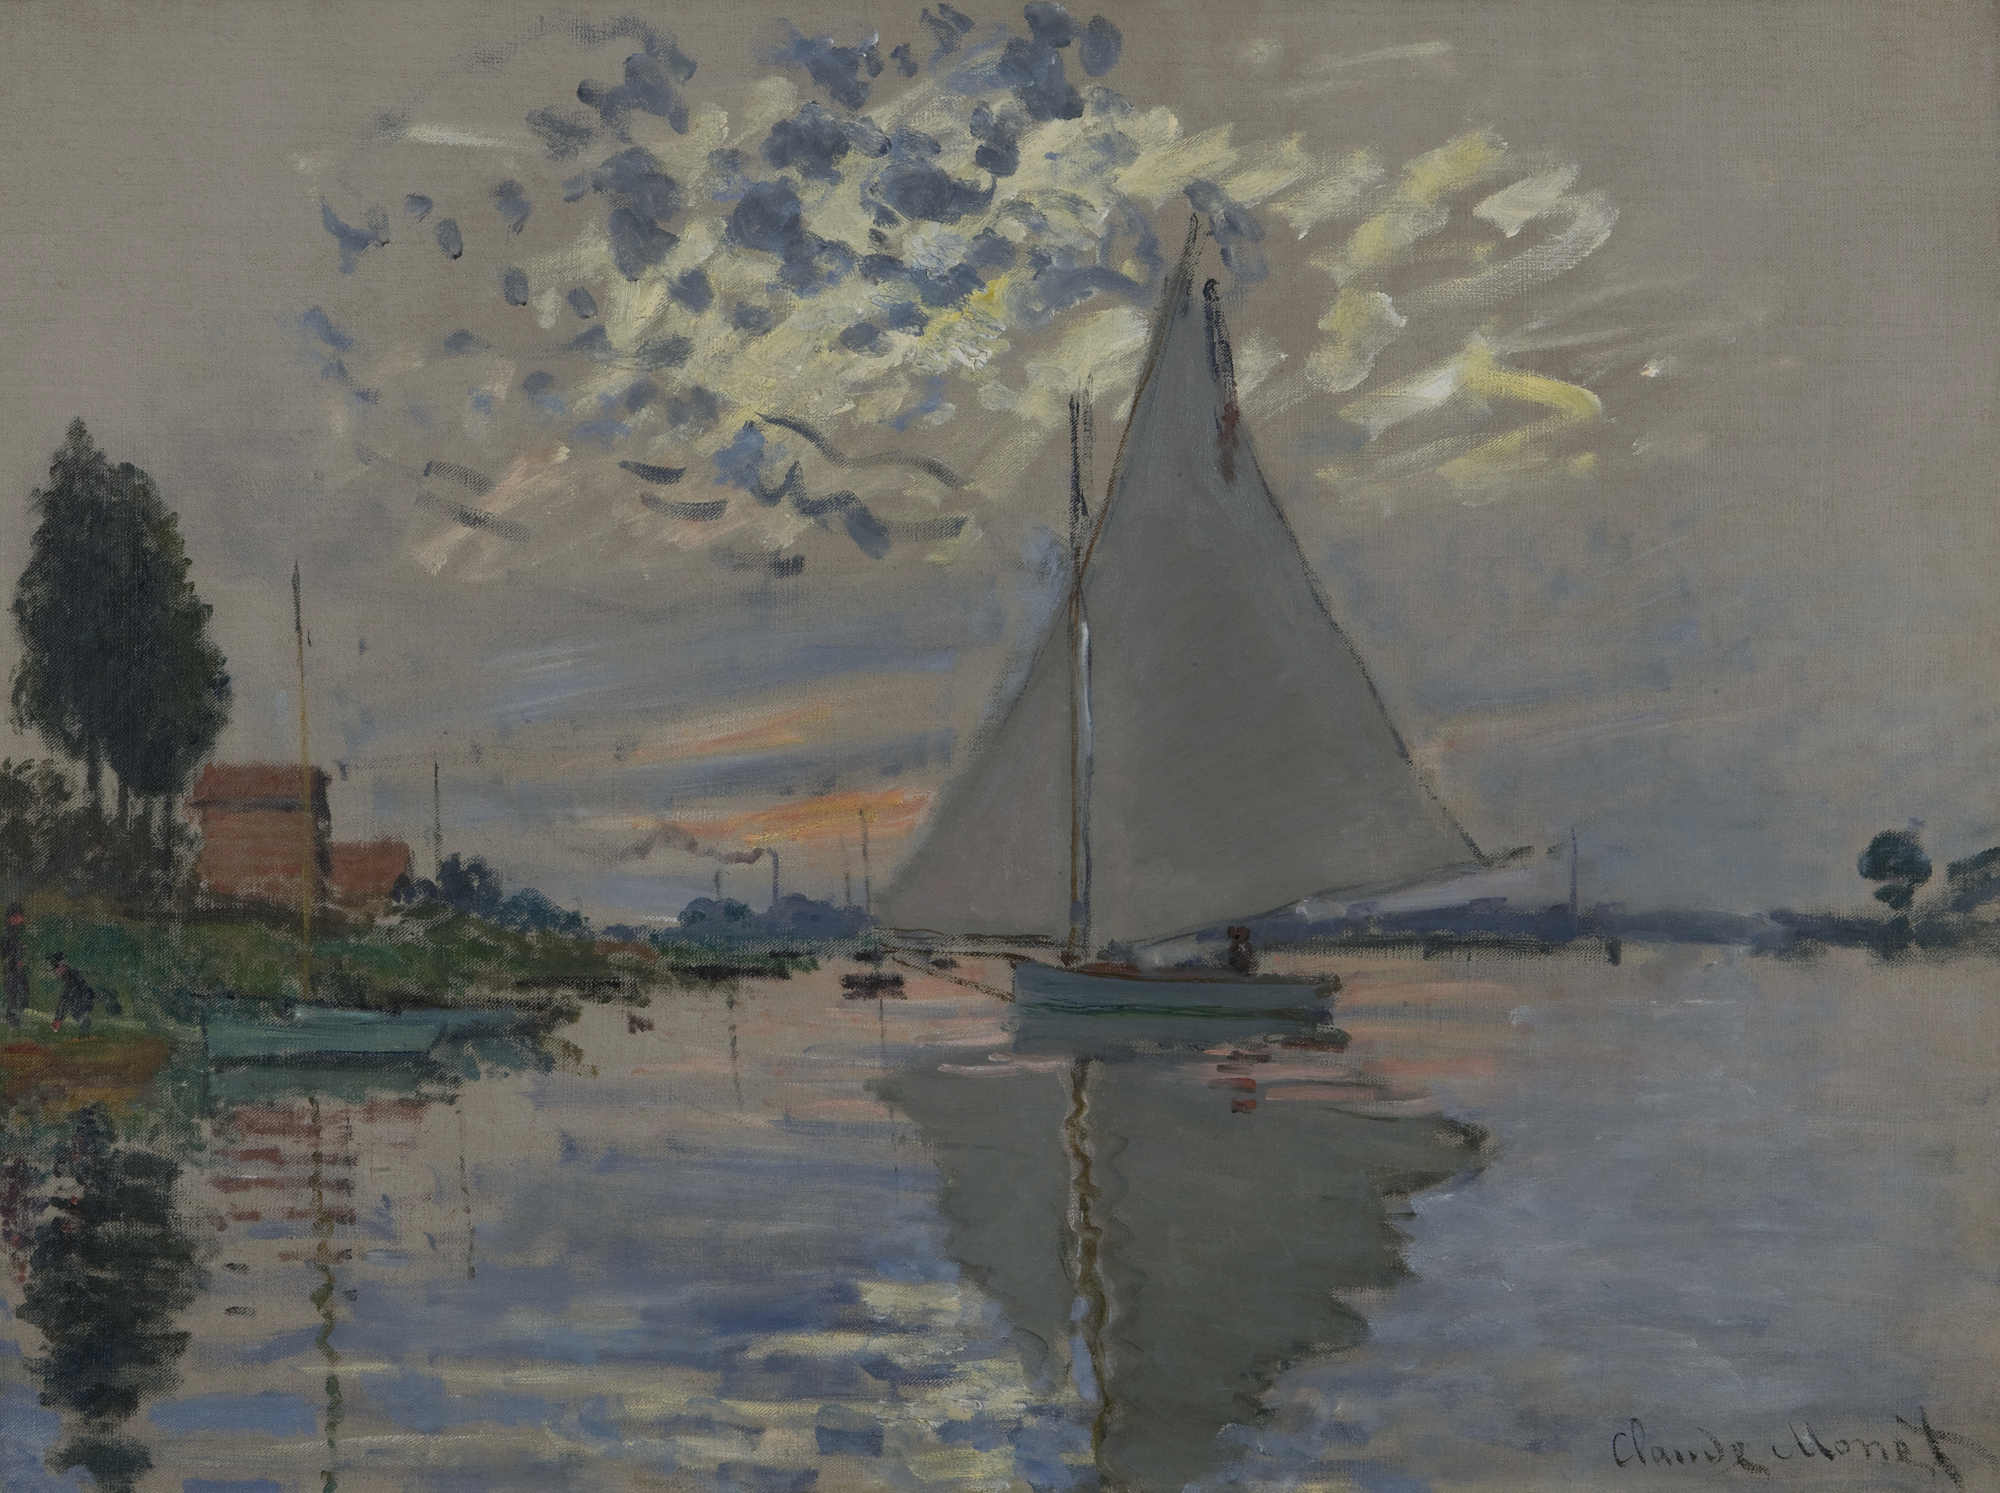 Claude Monet, Voilier au Petit-Gennevilliers (Sailboat at Petit-Gennevilliers), 1874. Oil on canvas. Photo: Courtesy the Estate of Donald B. Marron